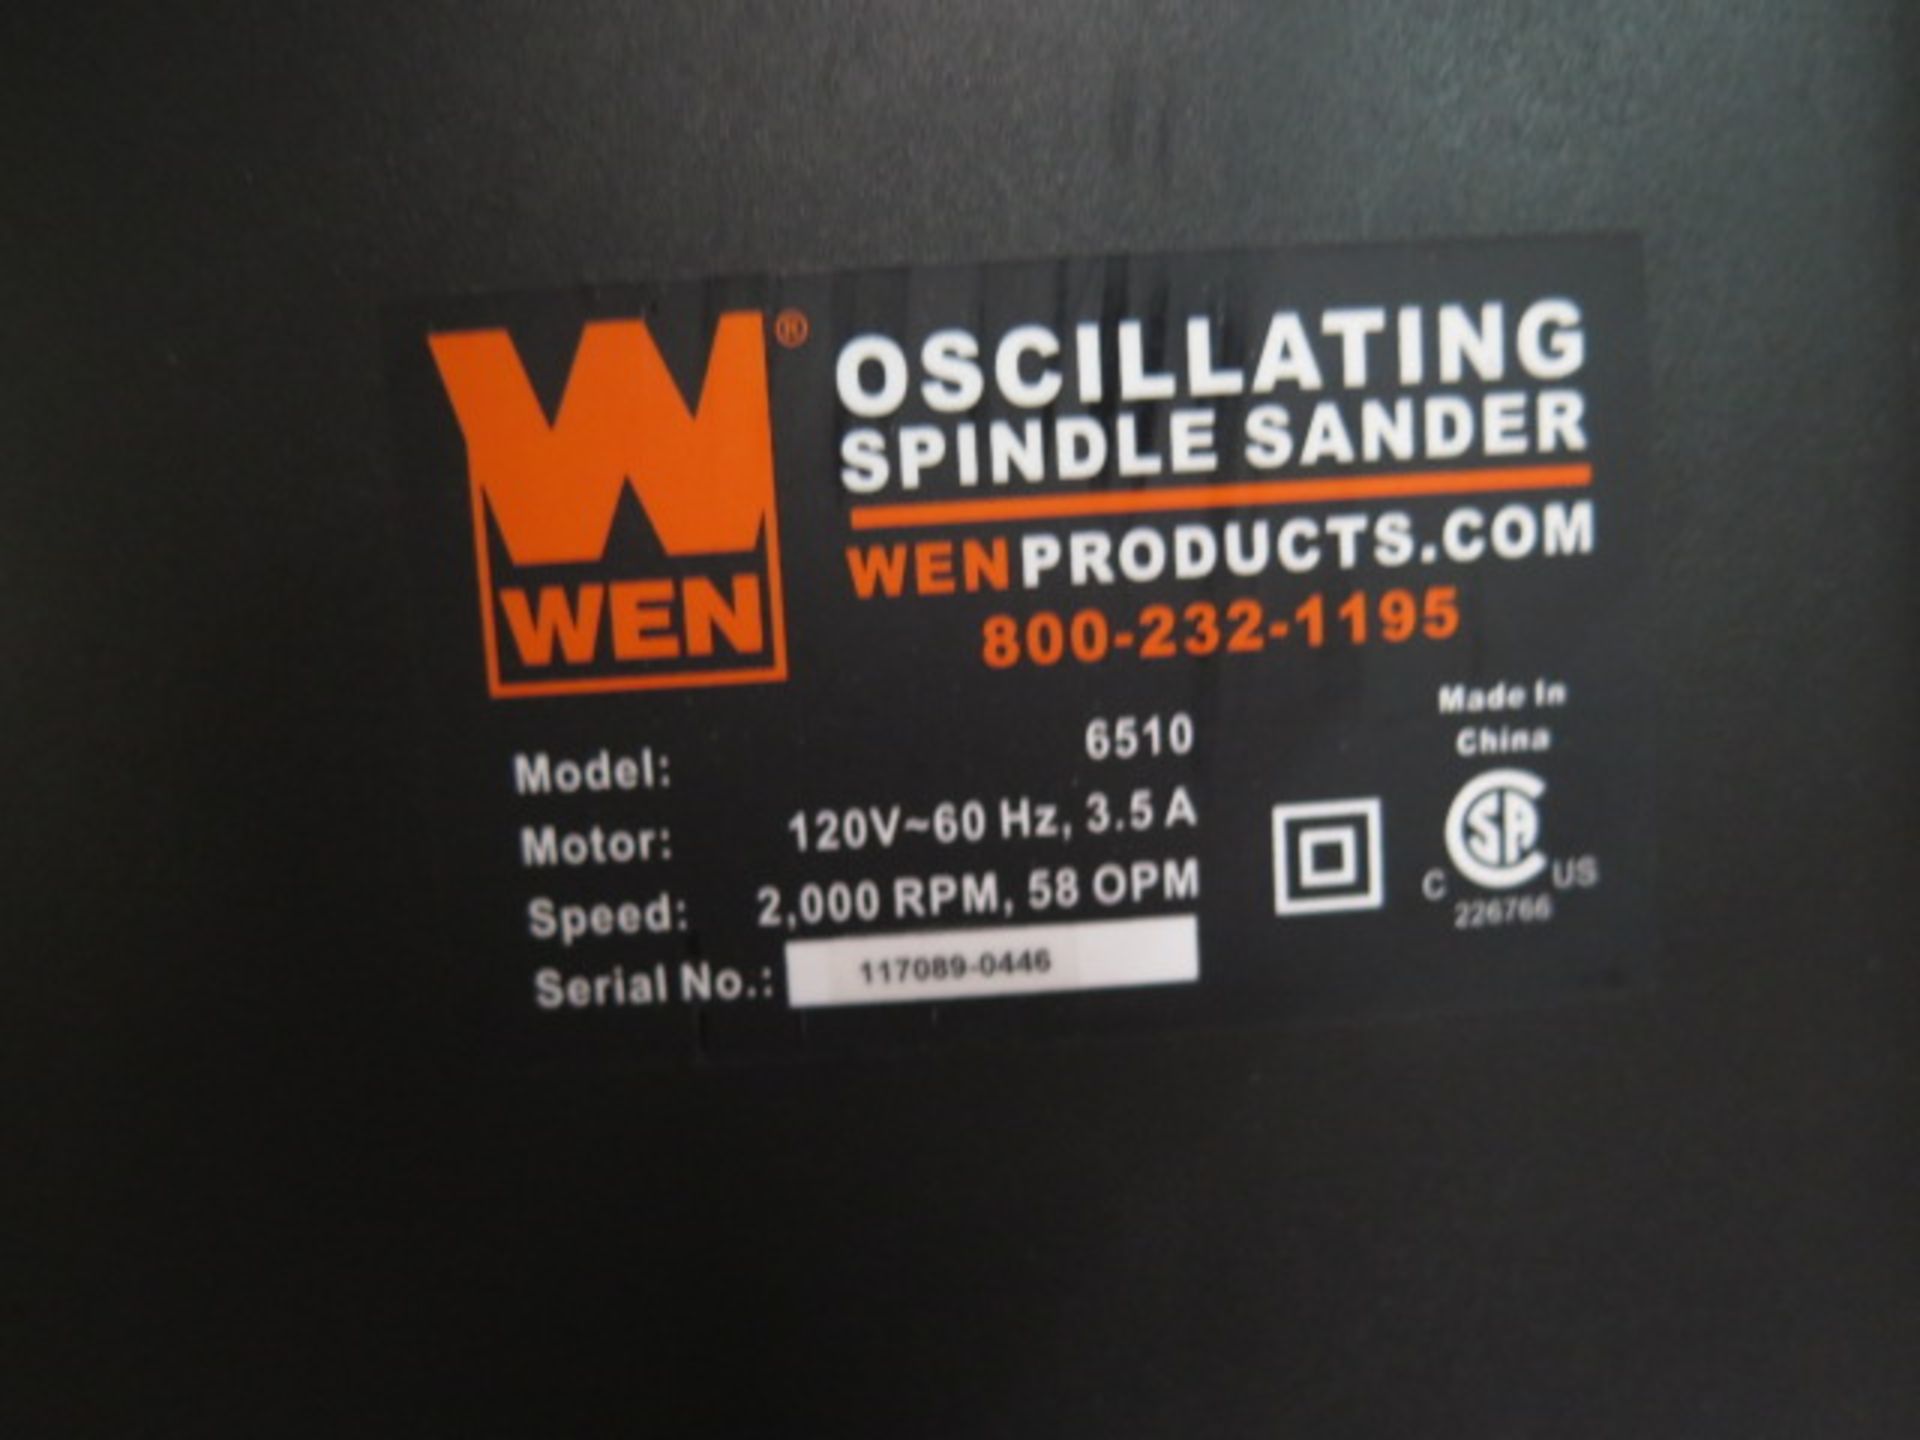 Wen Oscillating Spindle Sander - Image 3 of 3